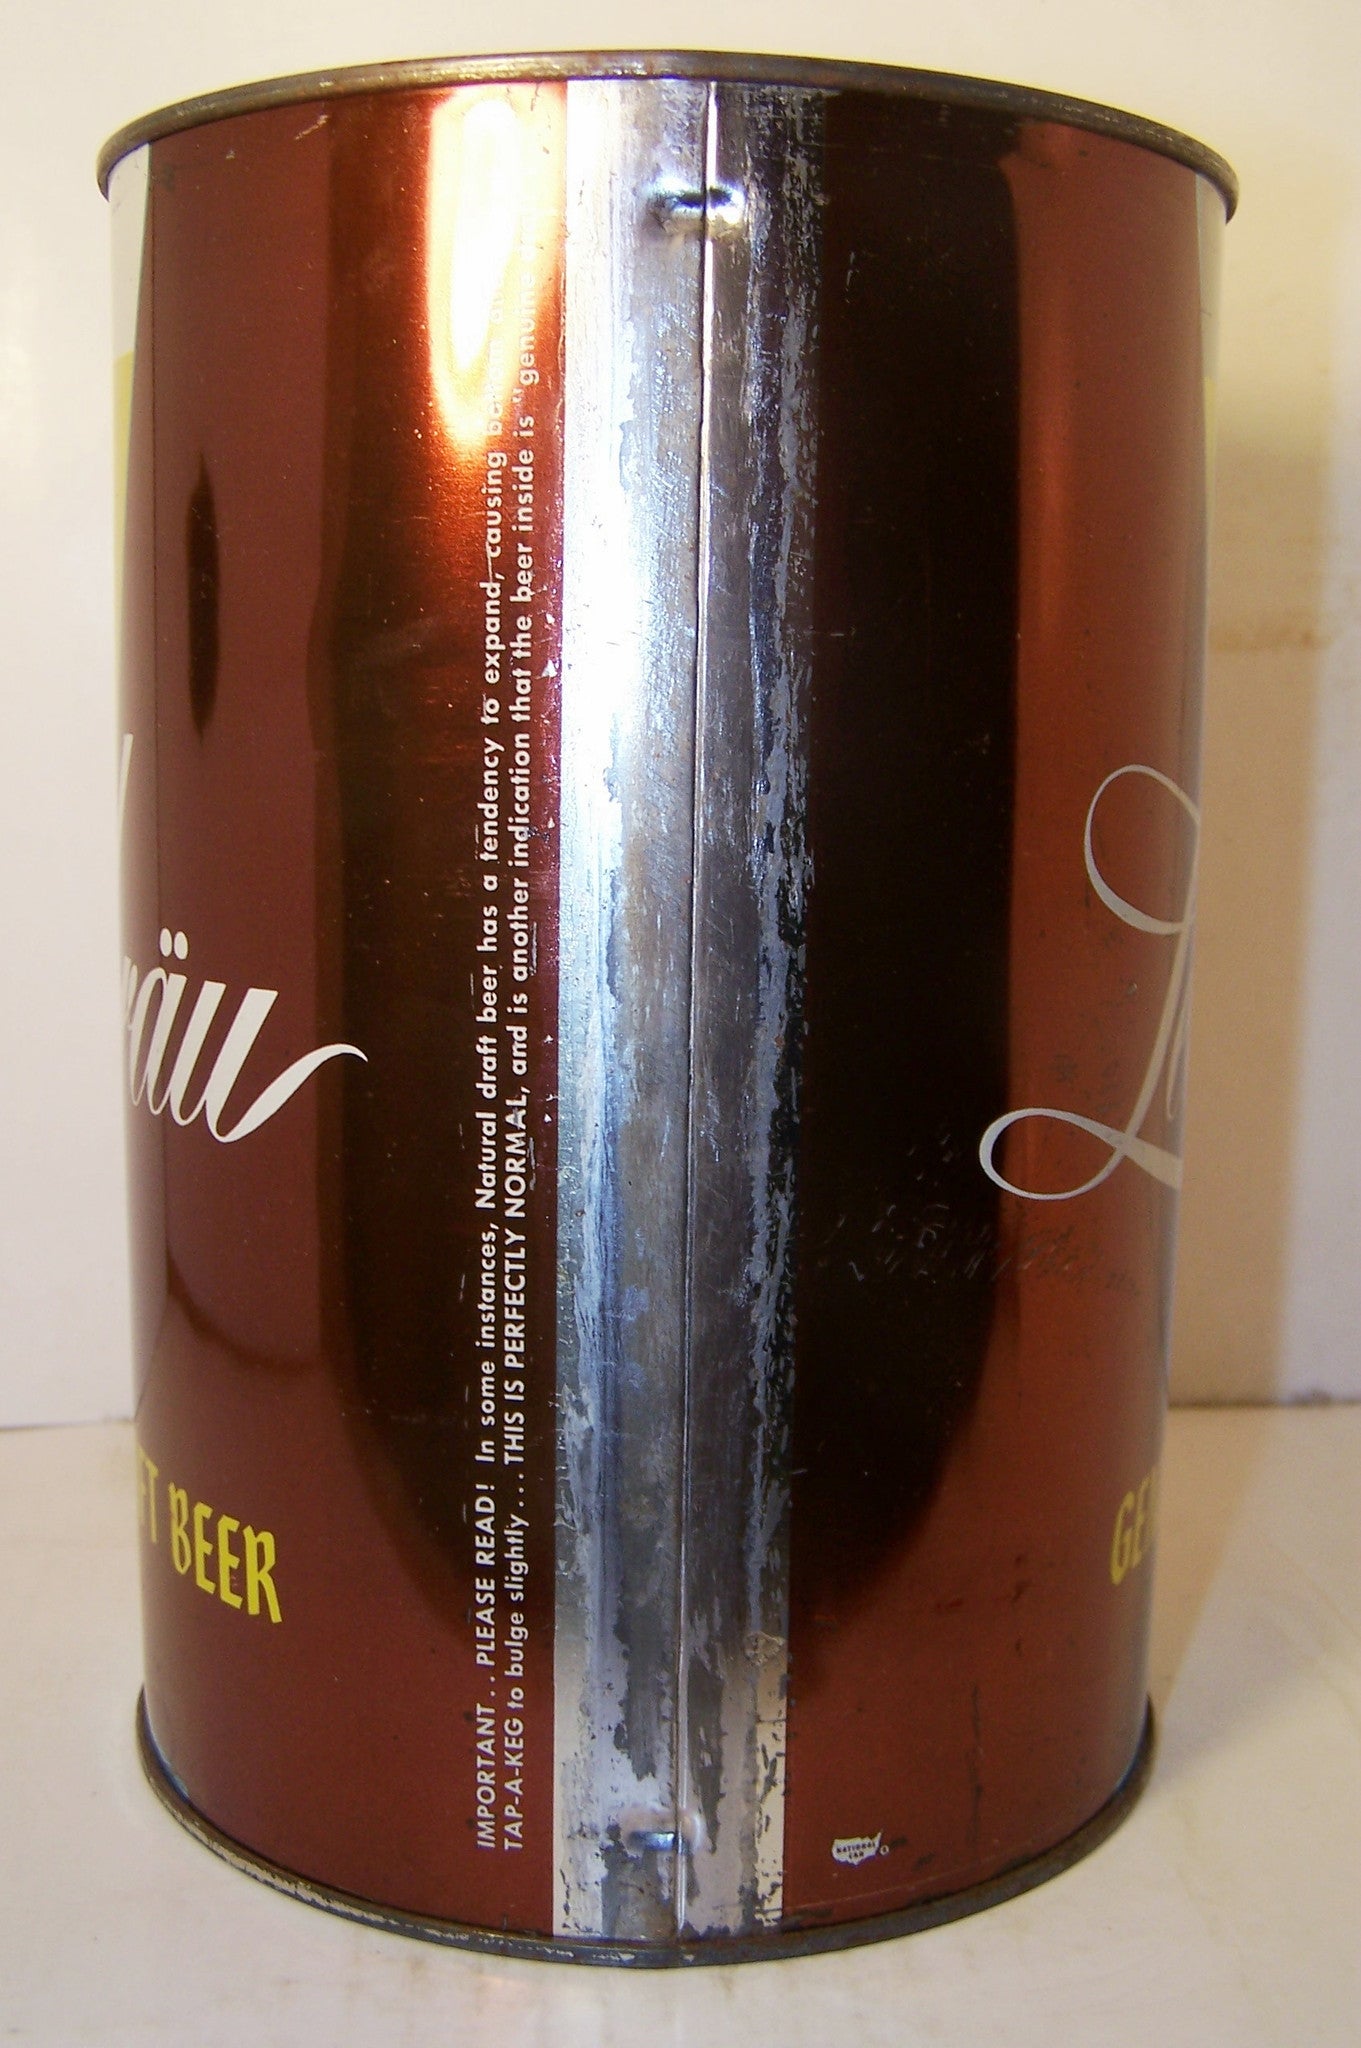 Lederbrau Genuine Draft Beer, USBC 245-11, Grade 1/1-  Sold  12/2/14